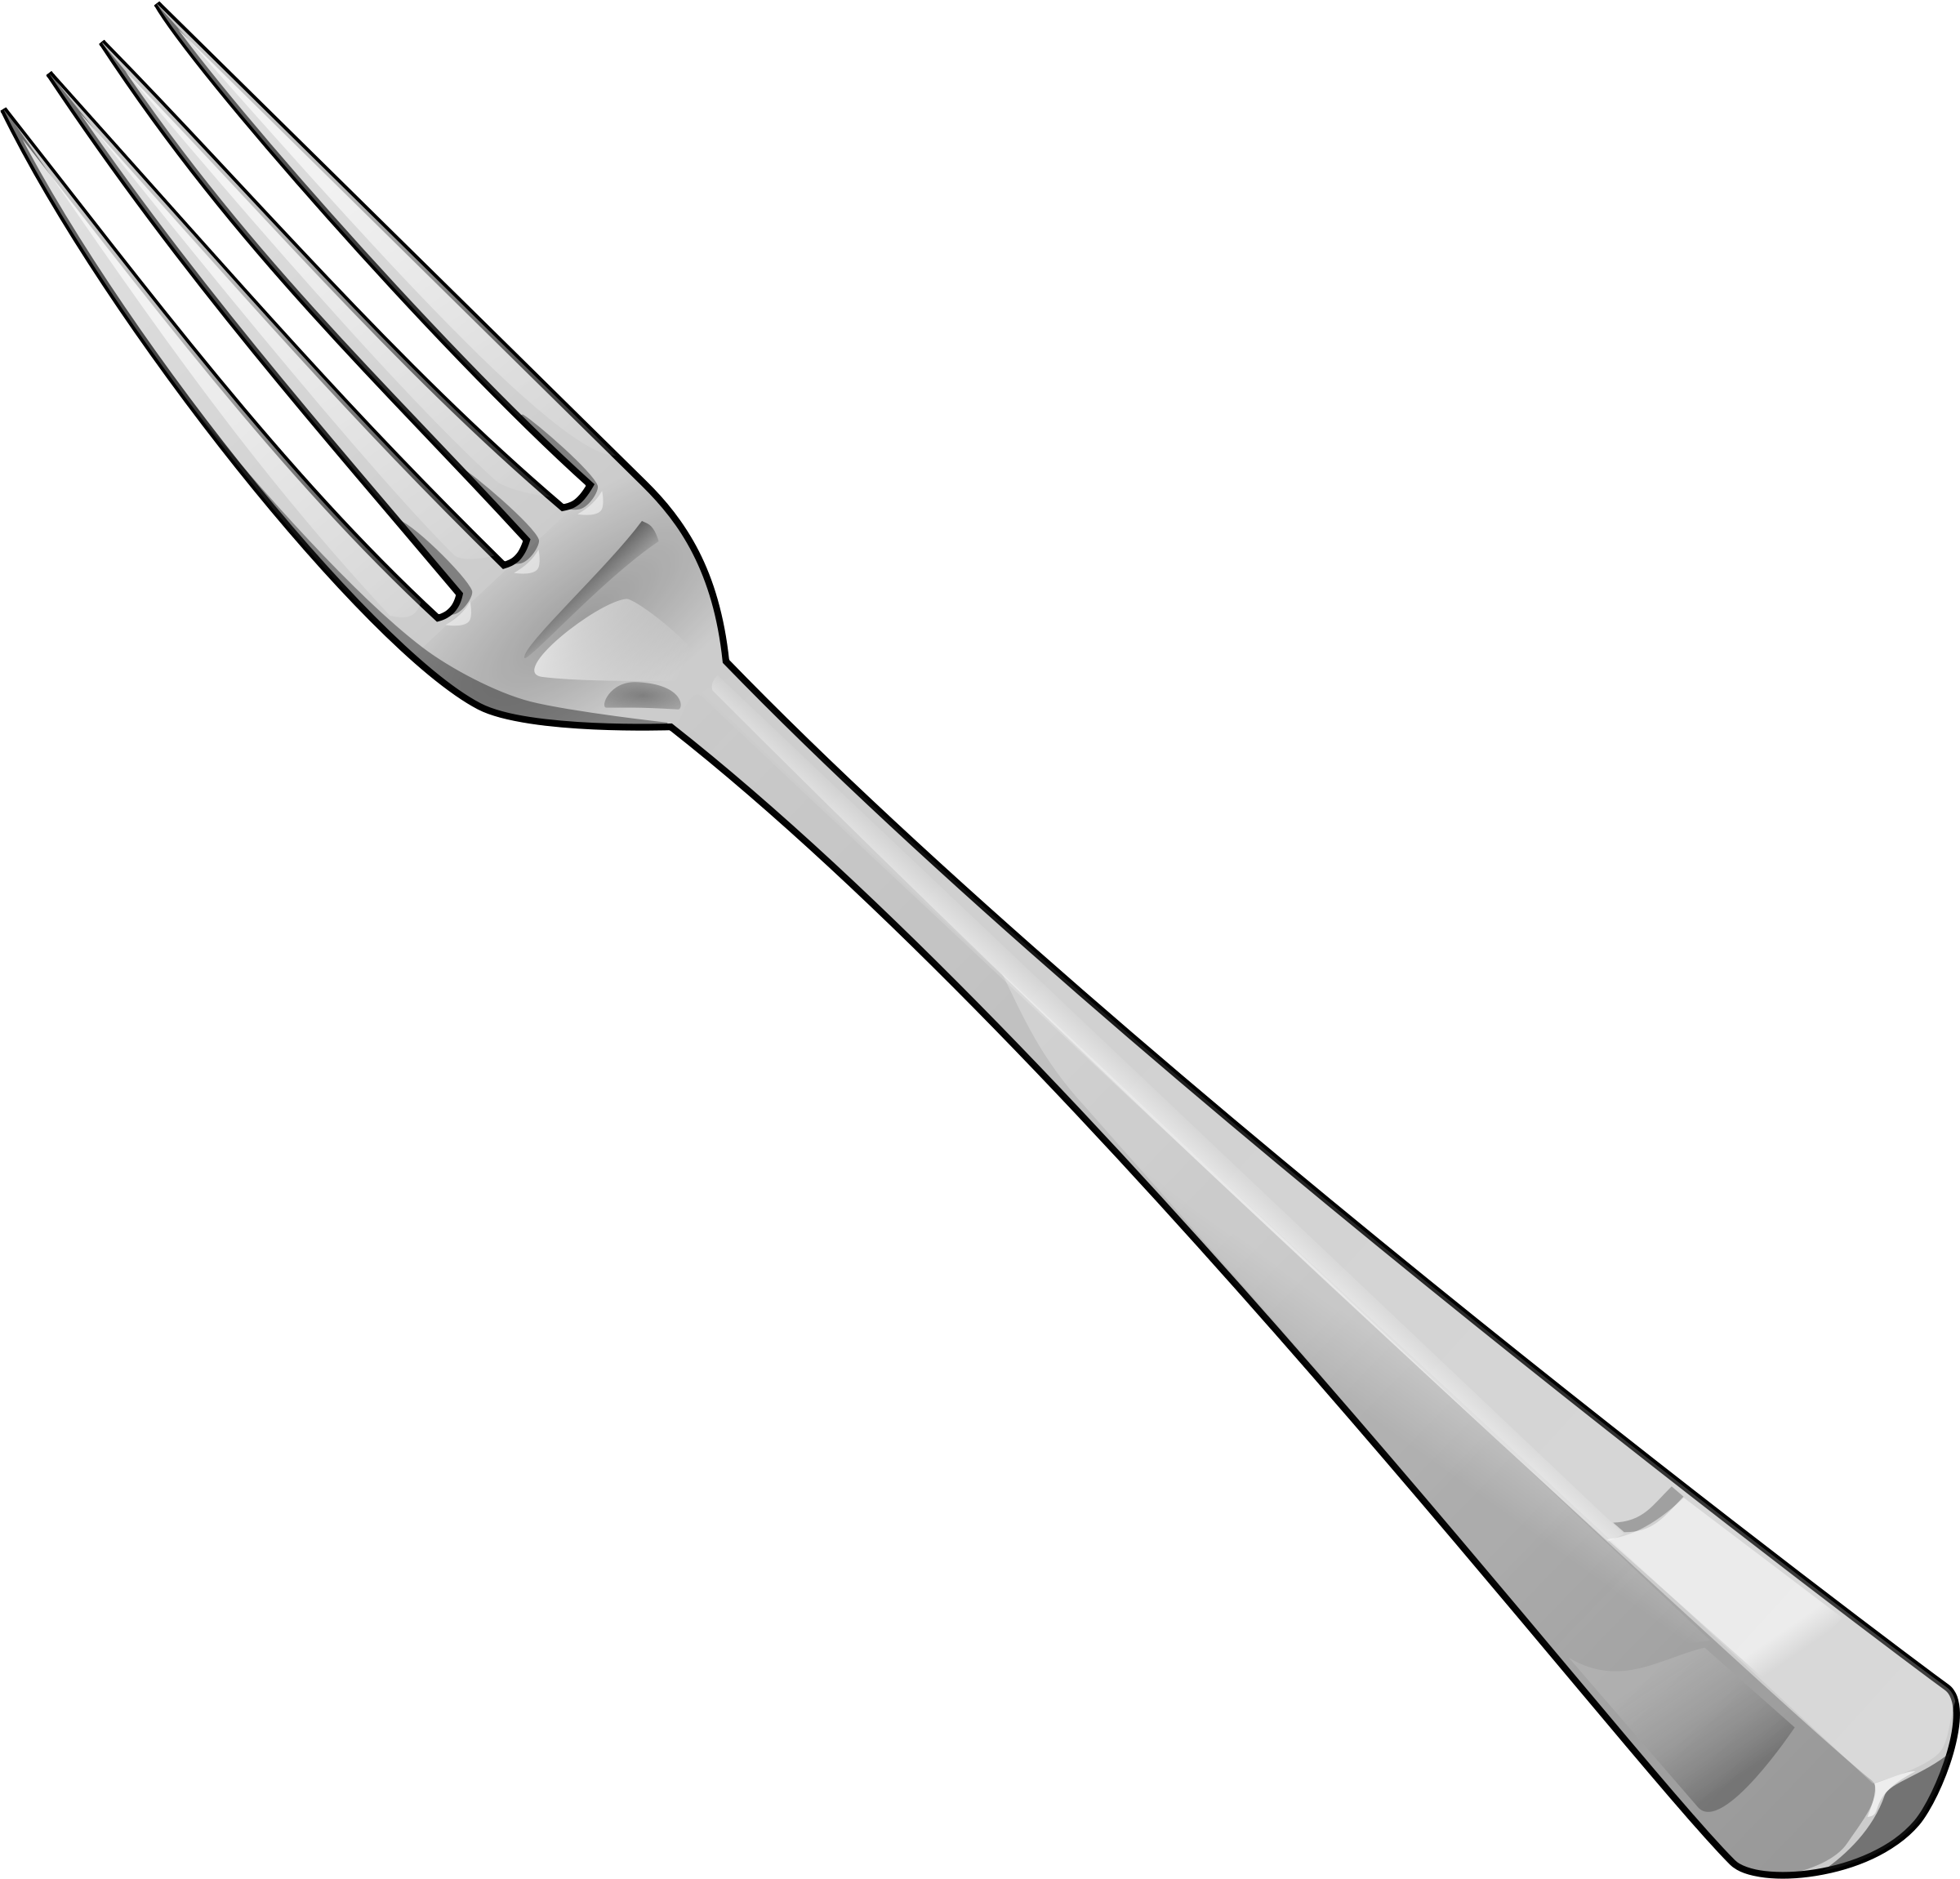 Forks images free fork pictur - Fork Clip Art